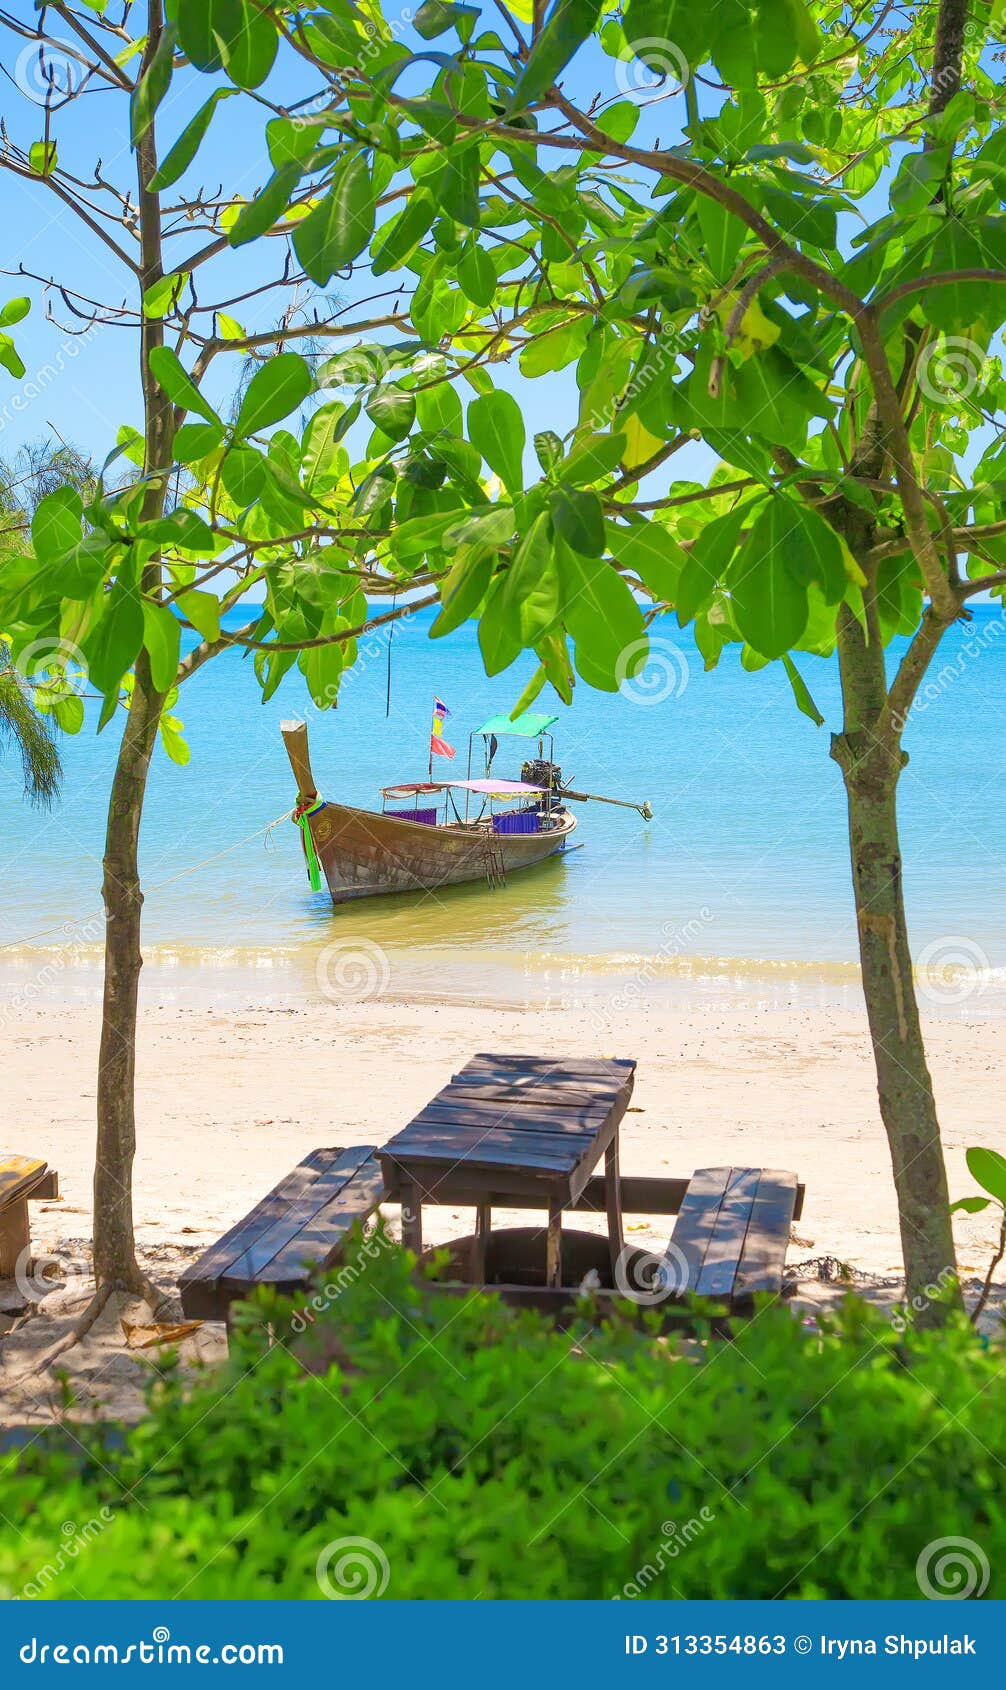 longtail boat at ao nang beach, krabi province, thailand